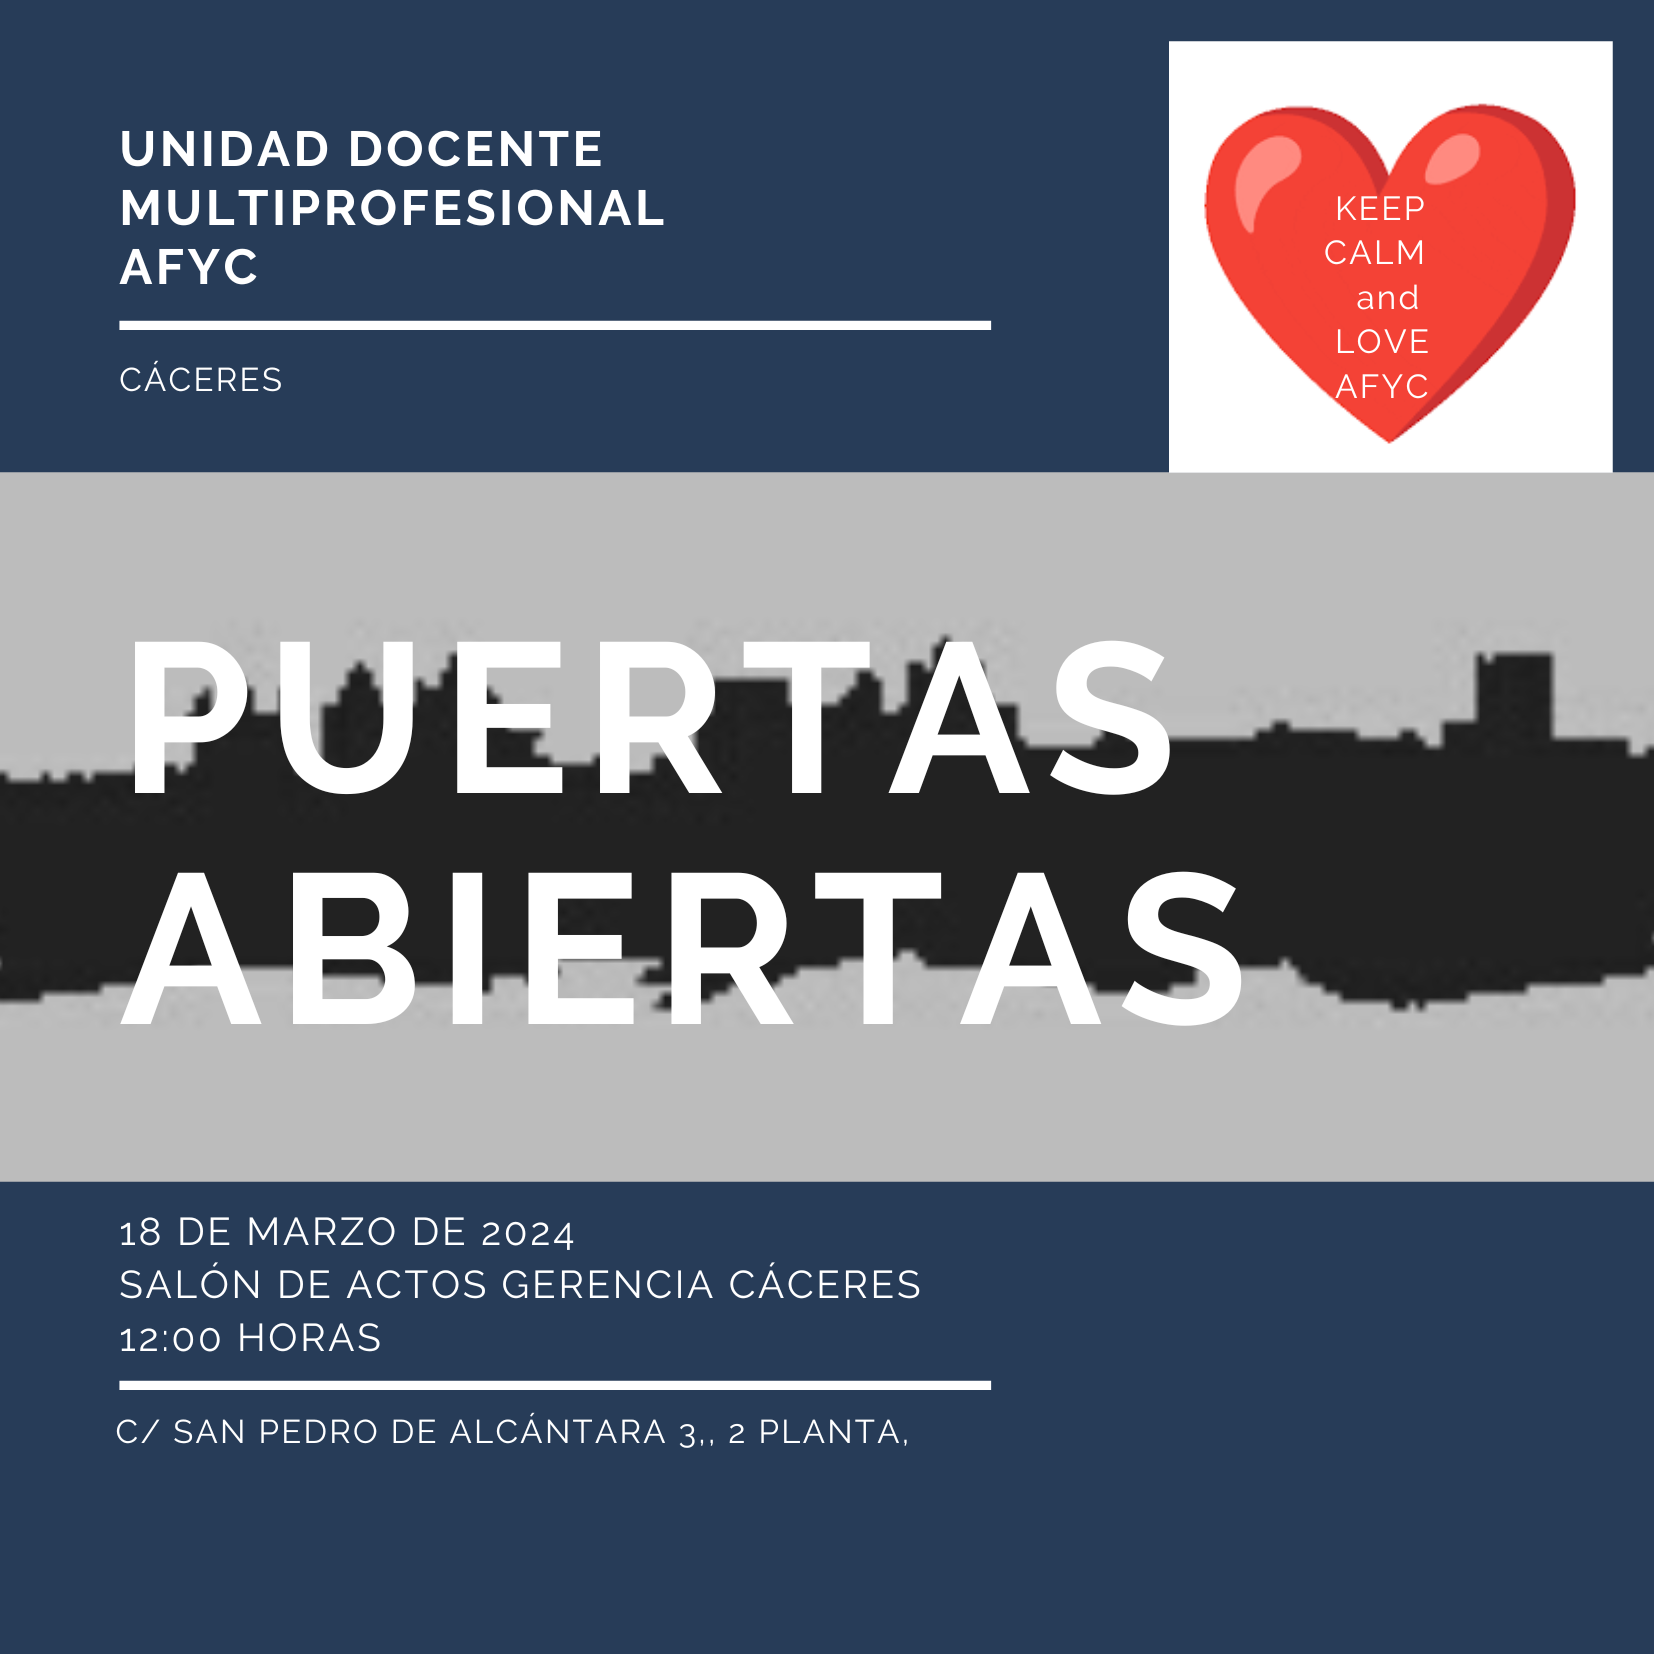 Jornada de puertas abiertas de la Unidad Docente del Área de Salud de Cáceres